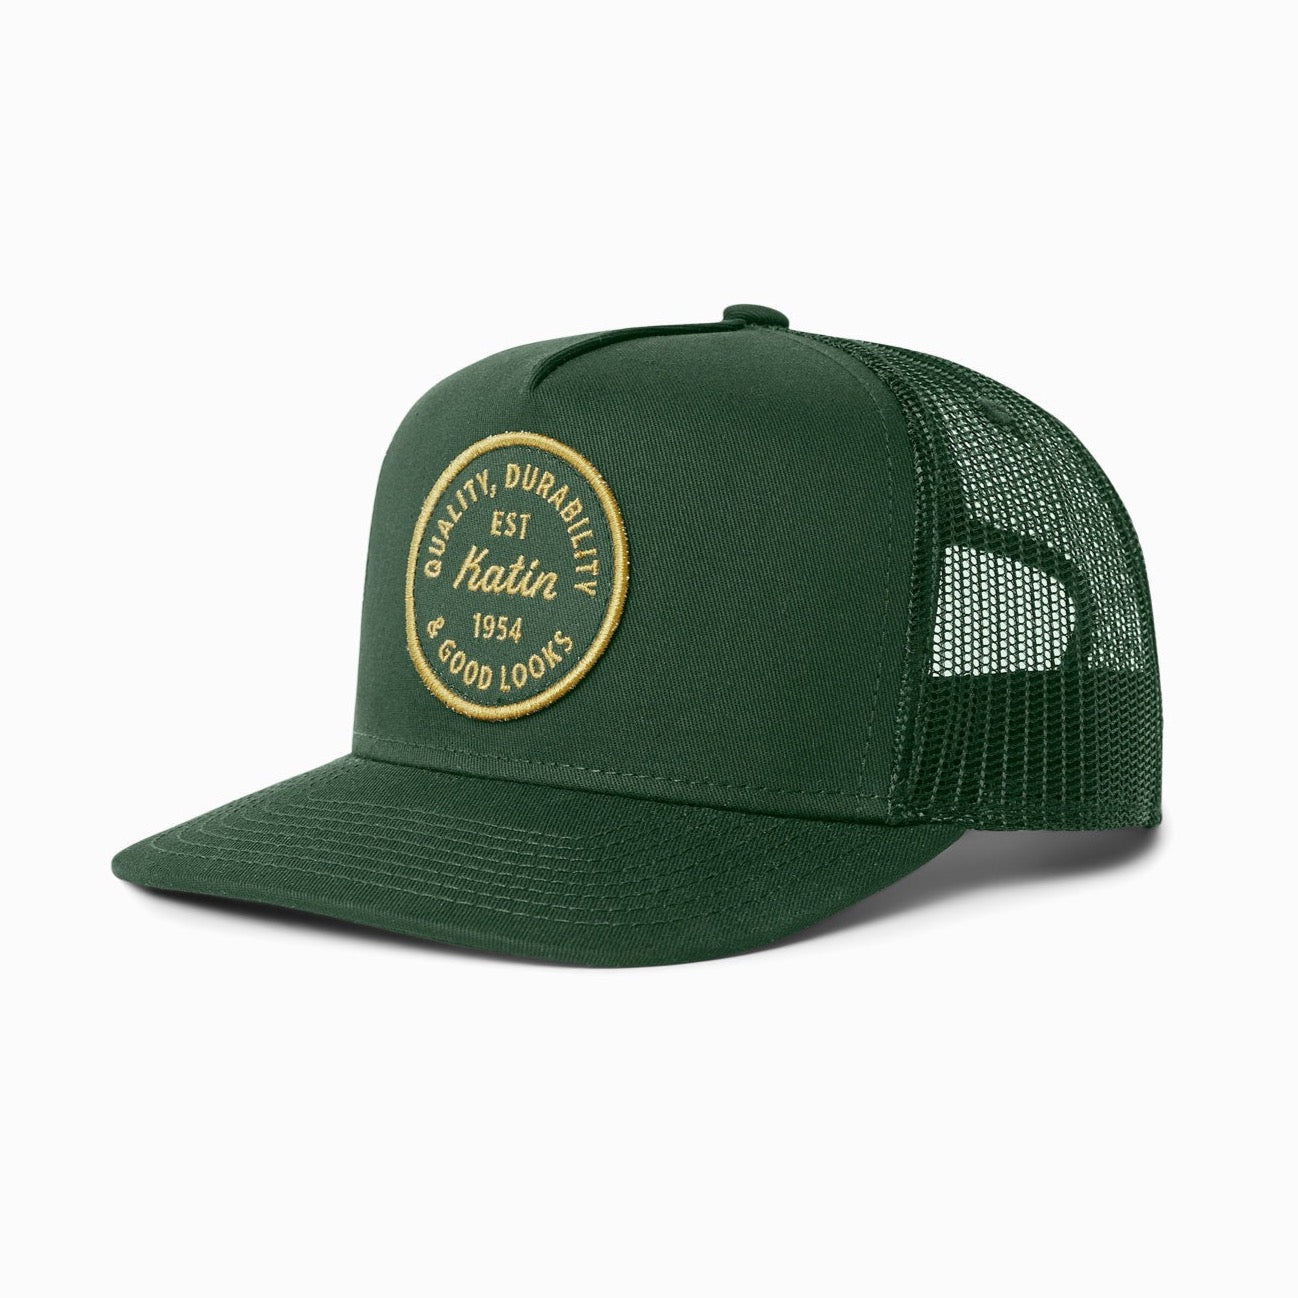 Katin USA - Chuck Trucker Hat